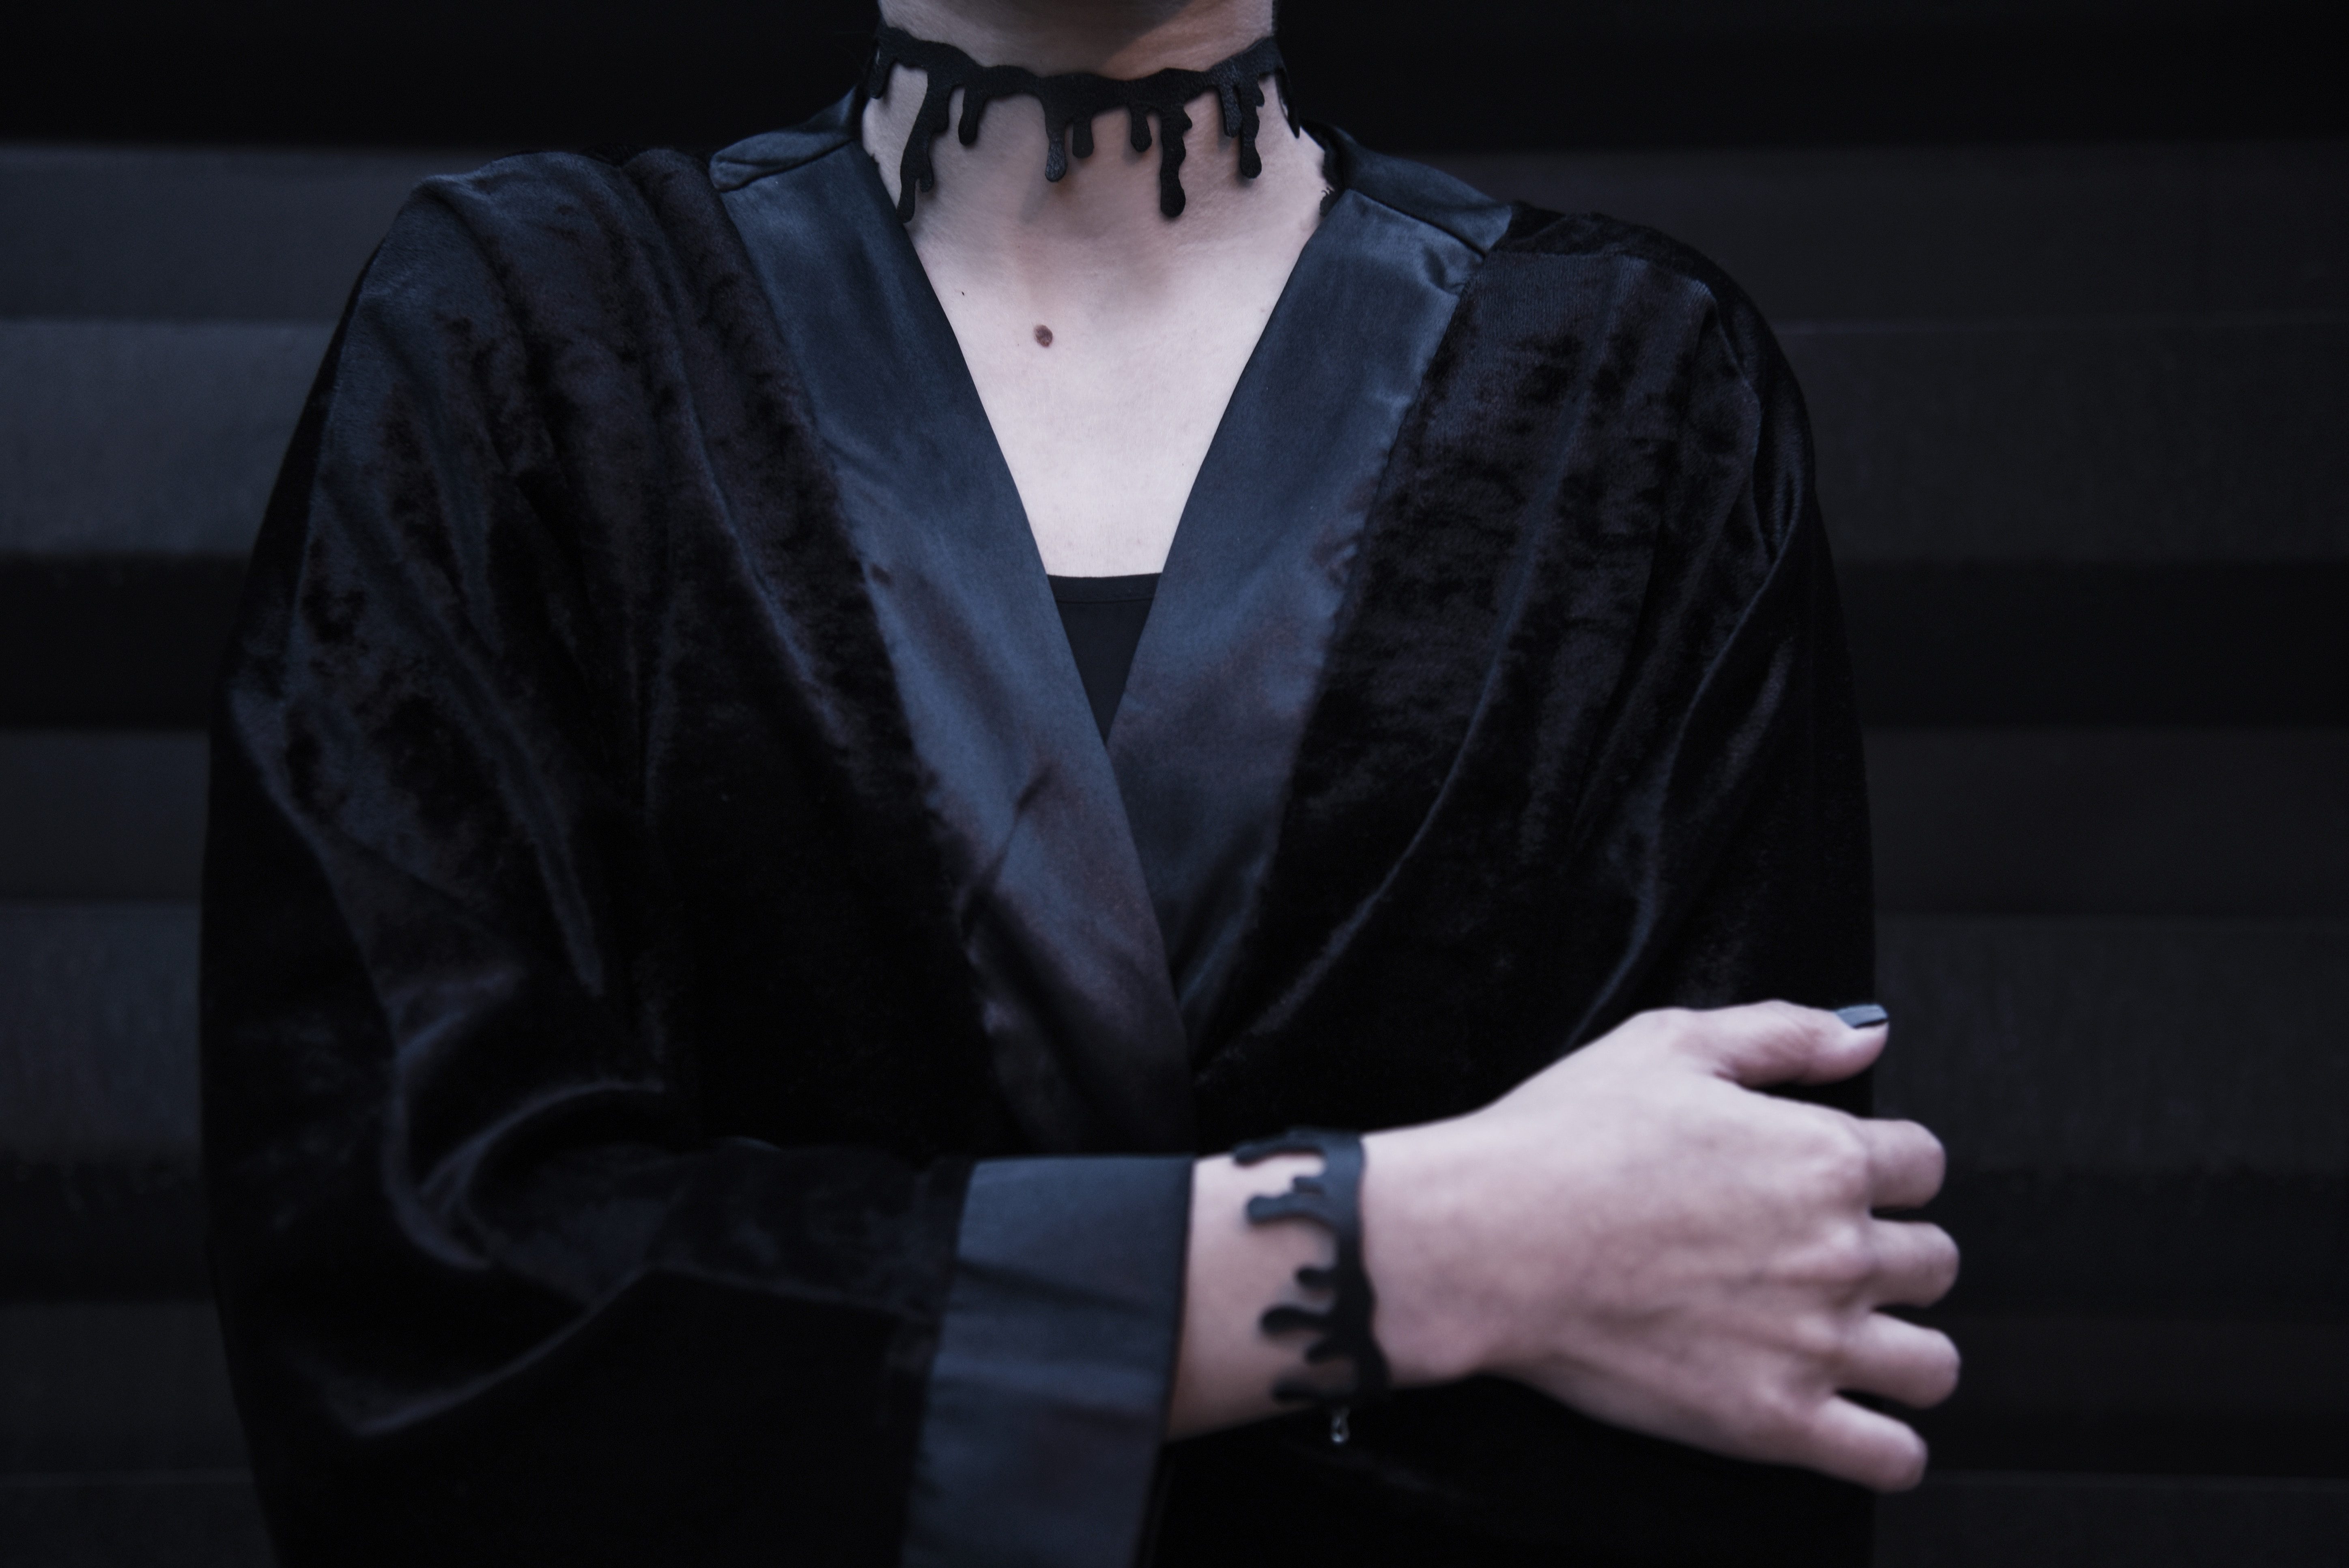 Velvet dress, Black velvet dress of women with mole on neck and she wears a neck band